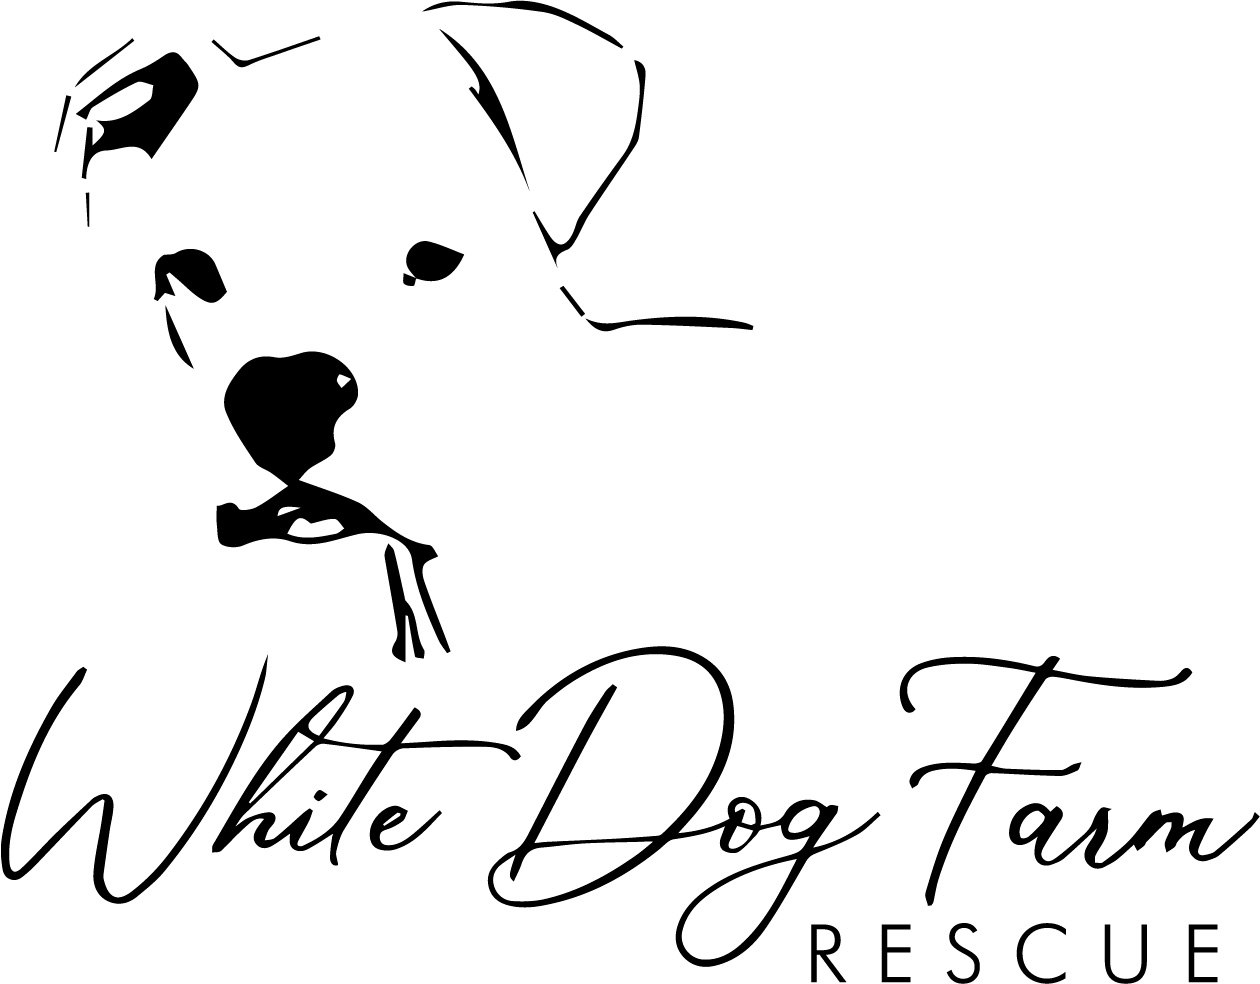 White Dog Farm Rescue